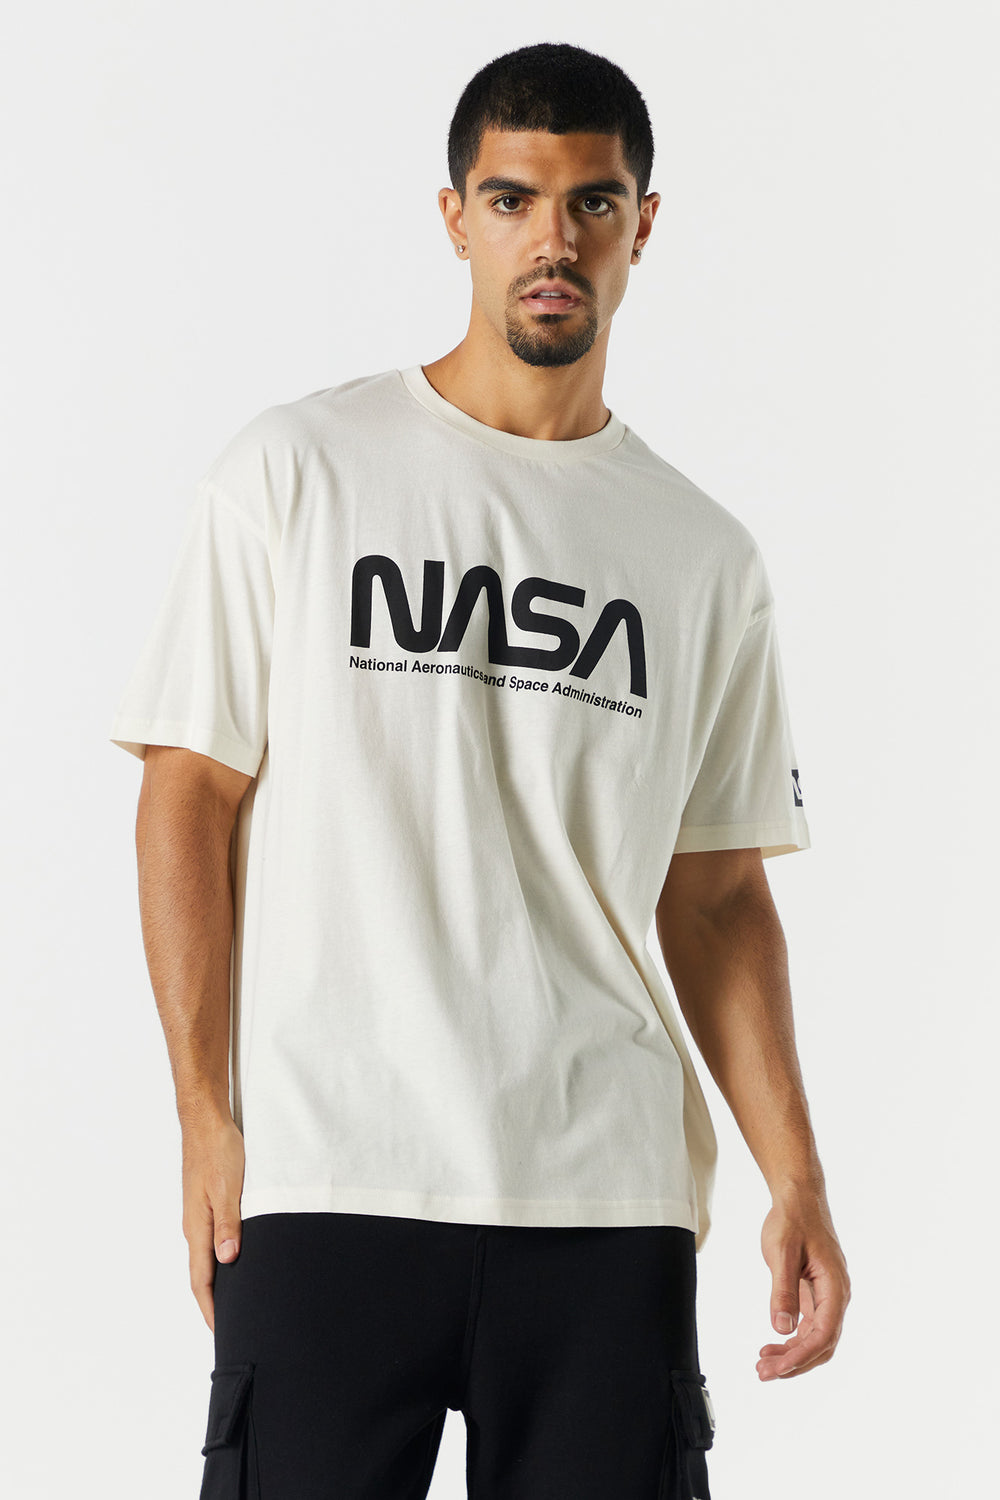 NASA Graphic T-Shirt NASA Graphic T-Shirt 7